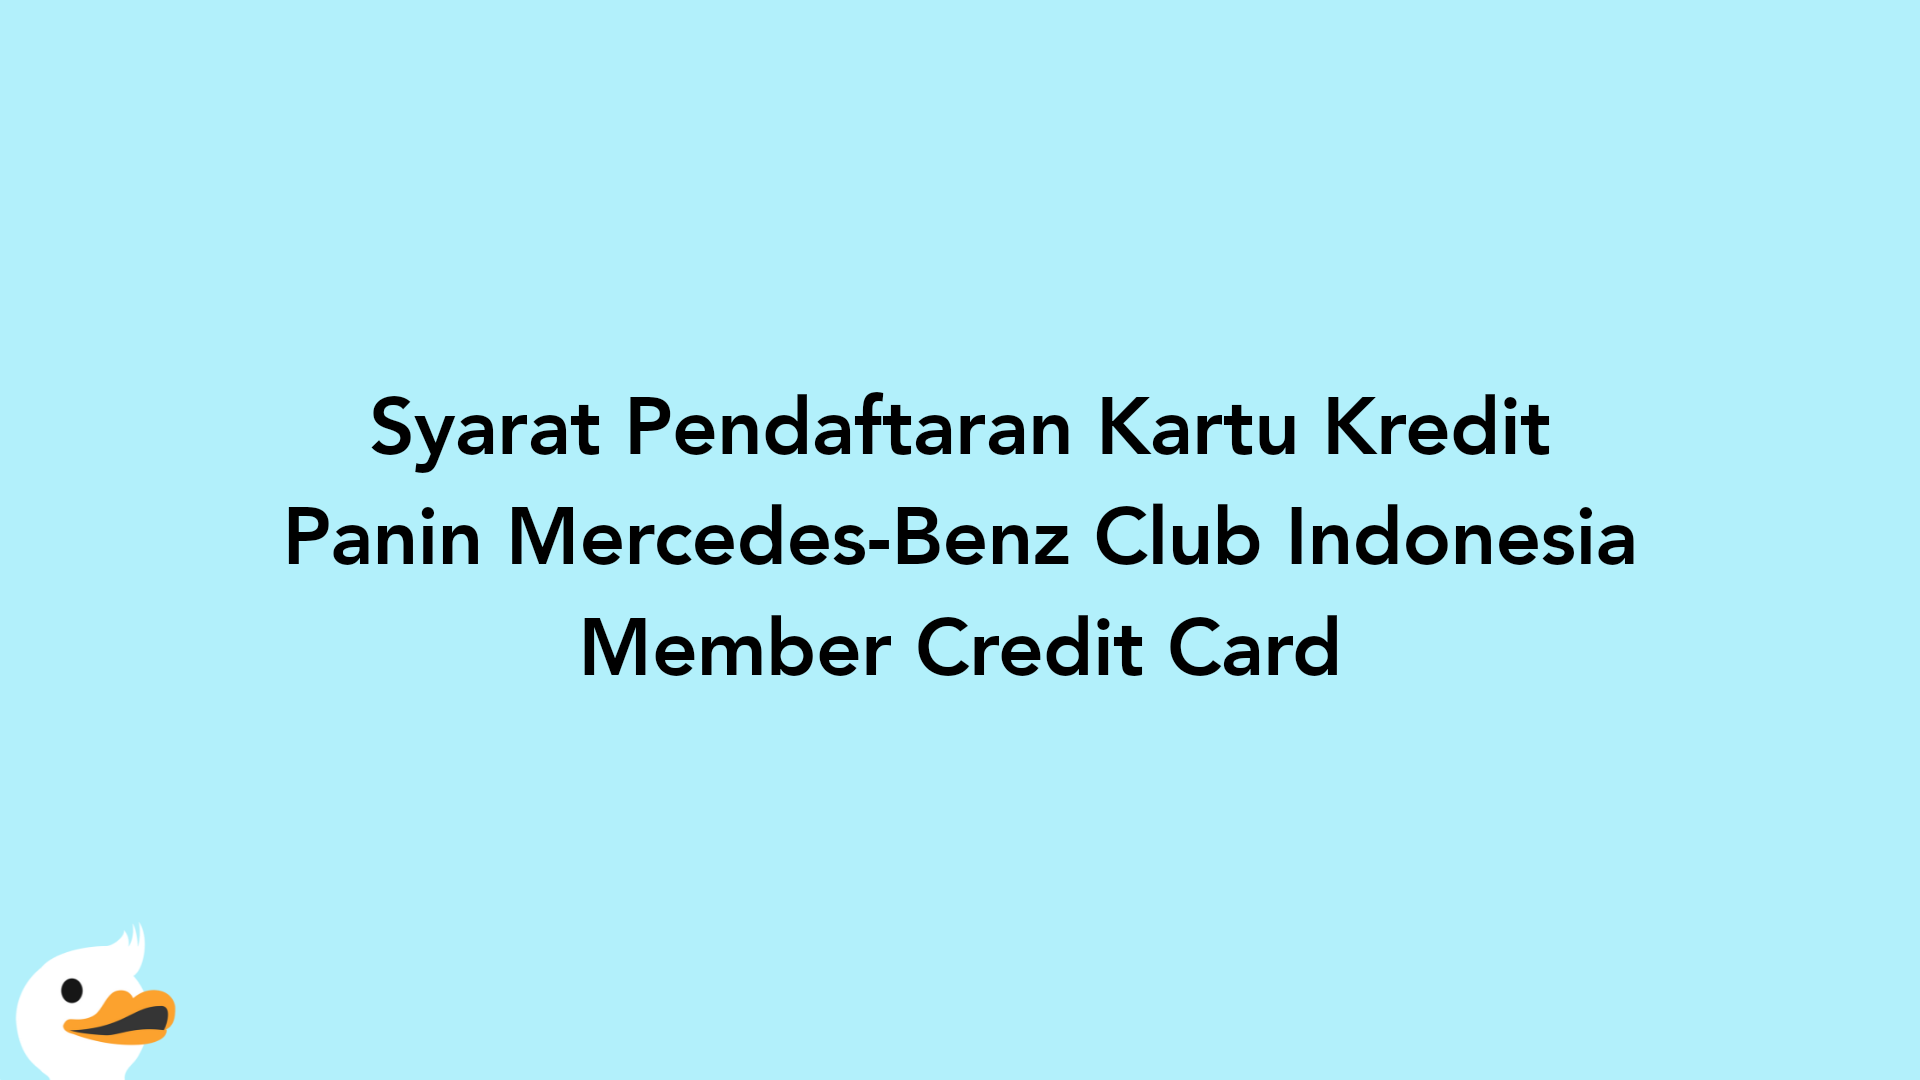 Syarat Pendaftaran Kartu Kredit Panin Mercedes-Benz Club Indonesia Member Credit Card